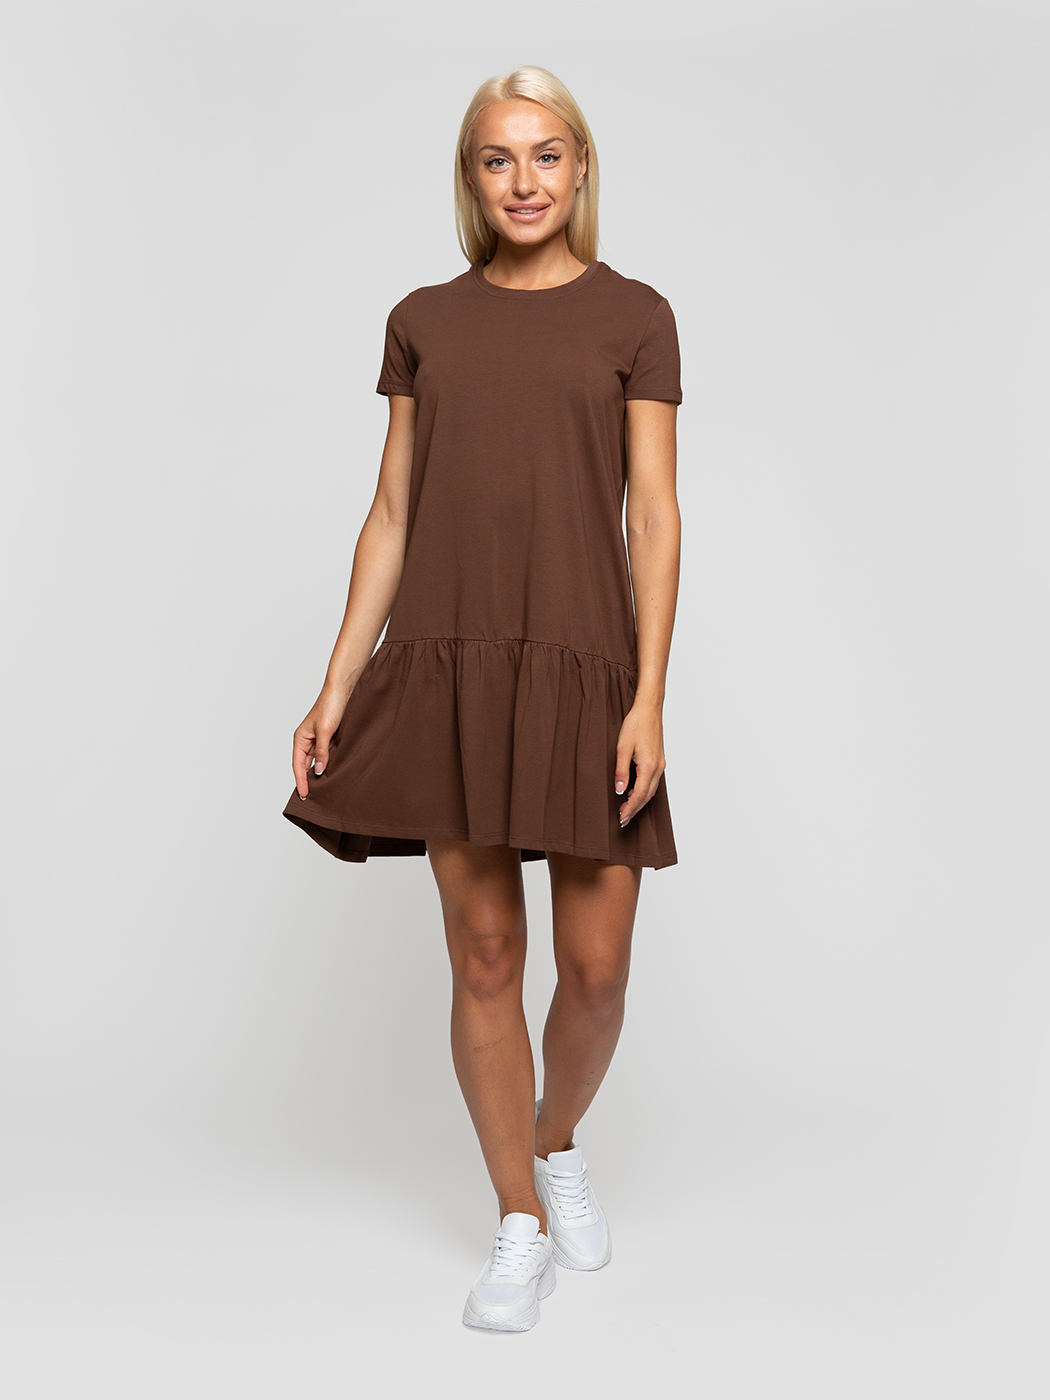 Платье женское Lunarable kelb027_ коричневое M